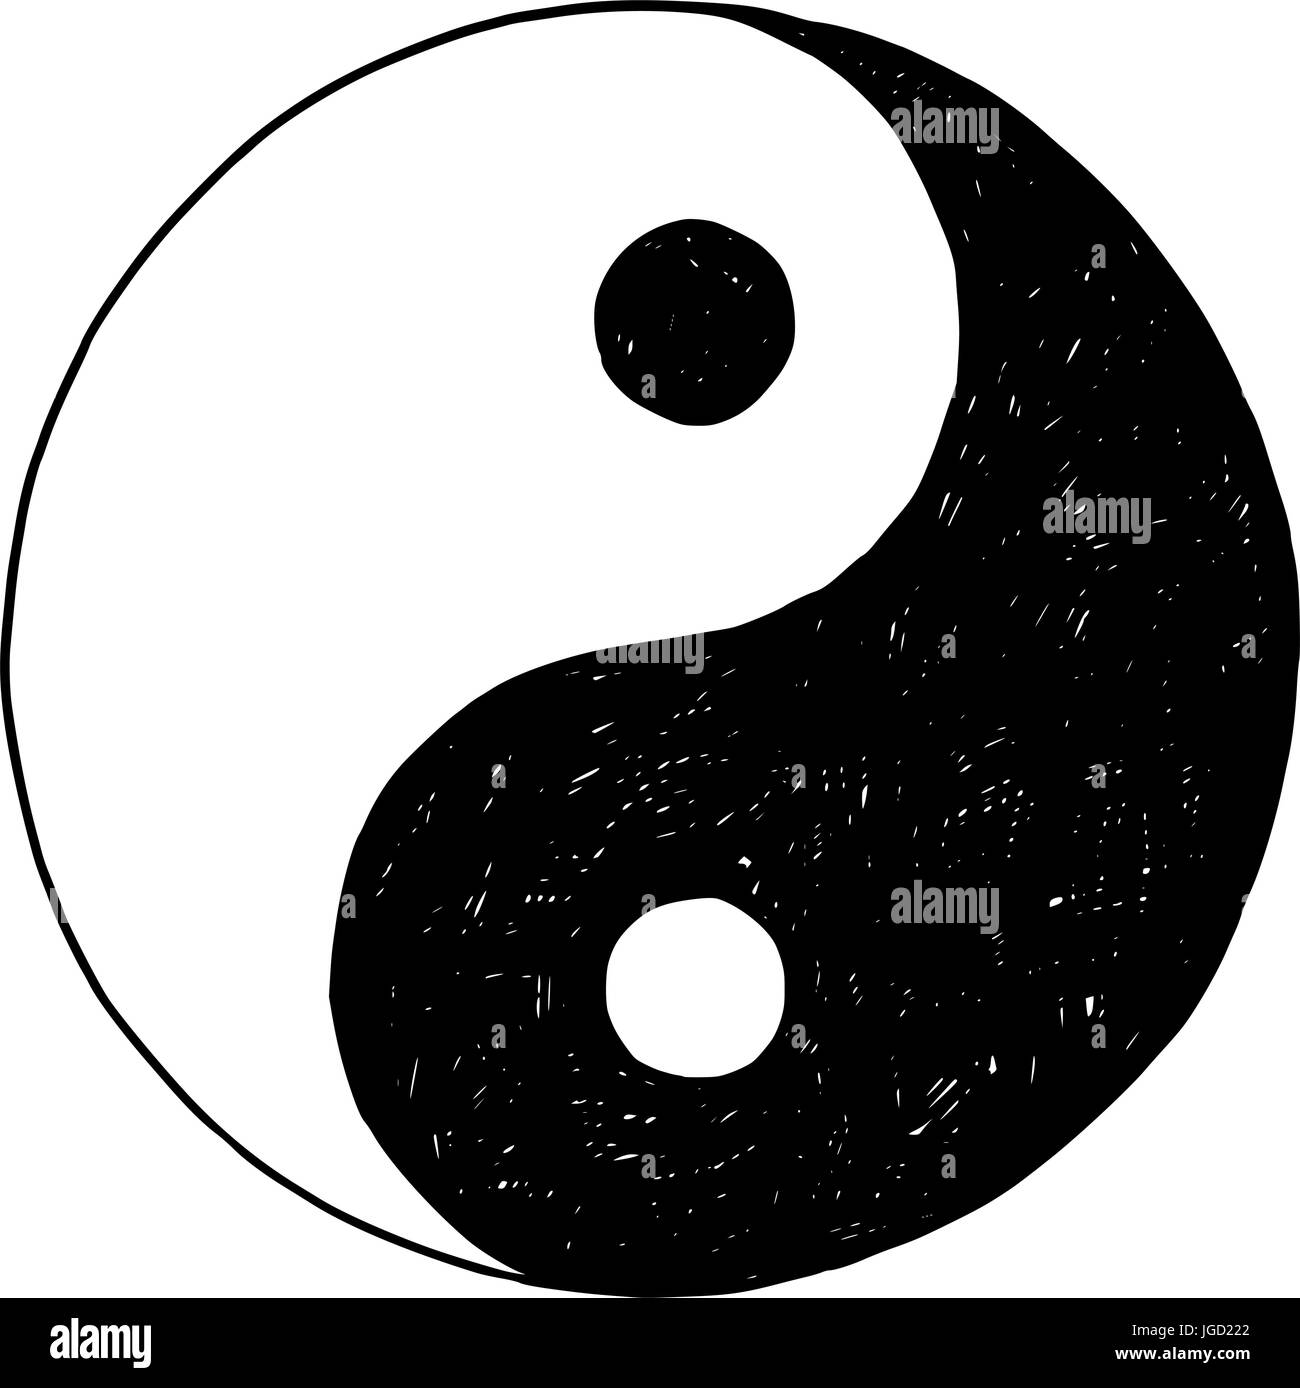 Hand drawn vector doodle illustration of yin yang jin jang symbol. Stock Vector